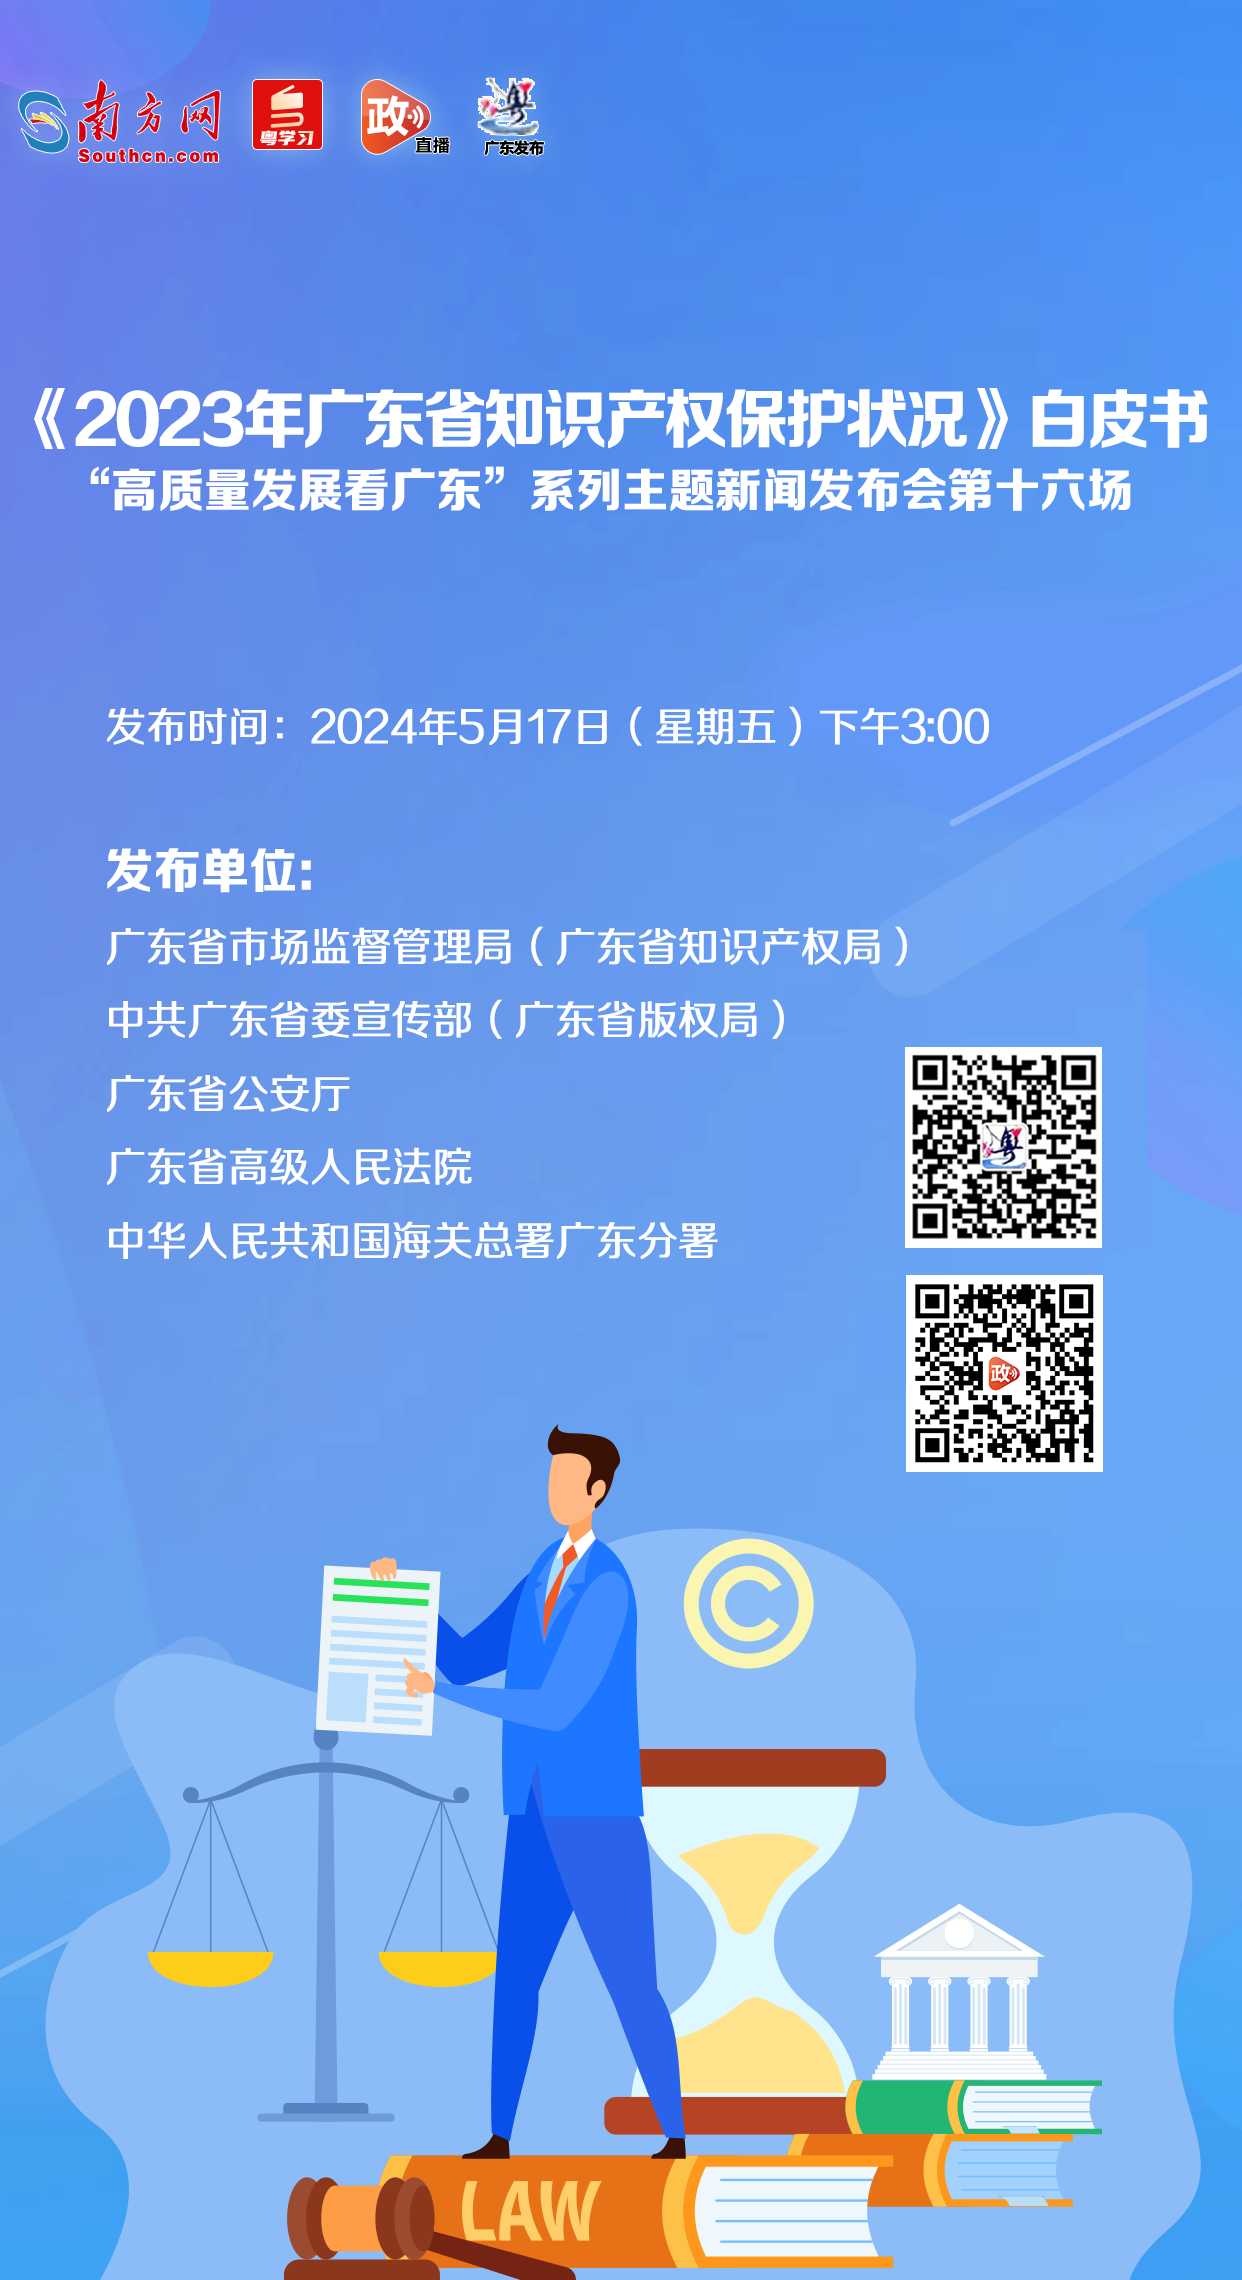 《2023年广东省知识产权保护状况》白皮书新闻发布会